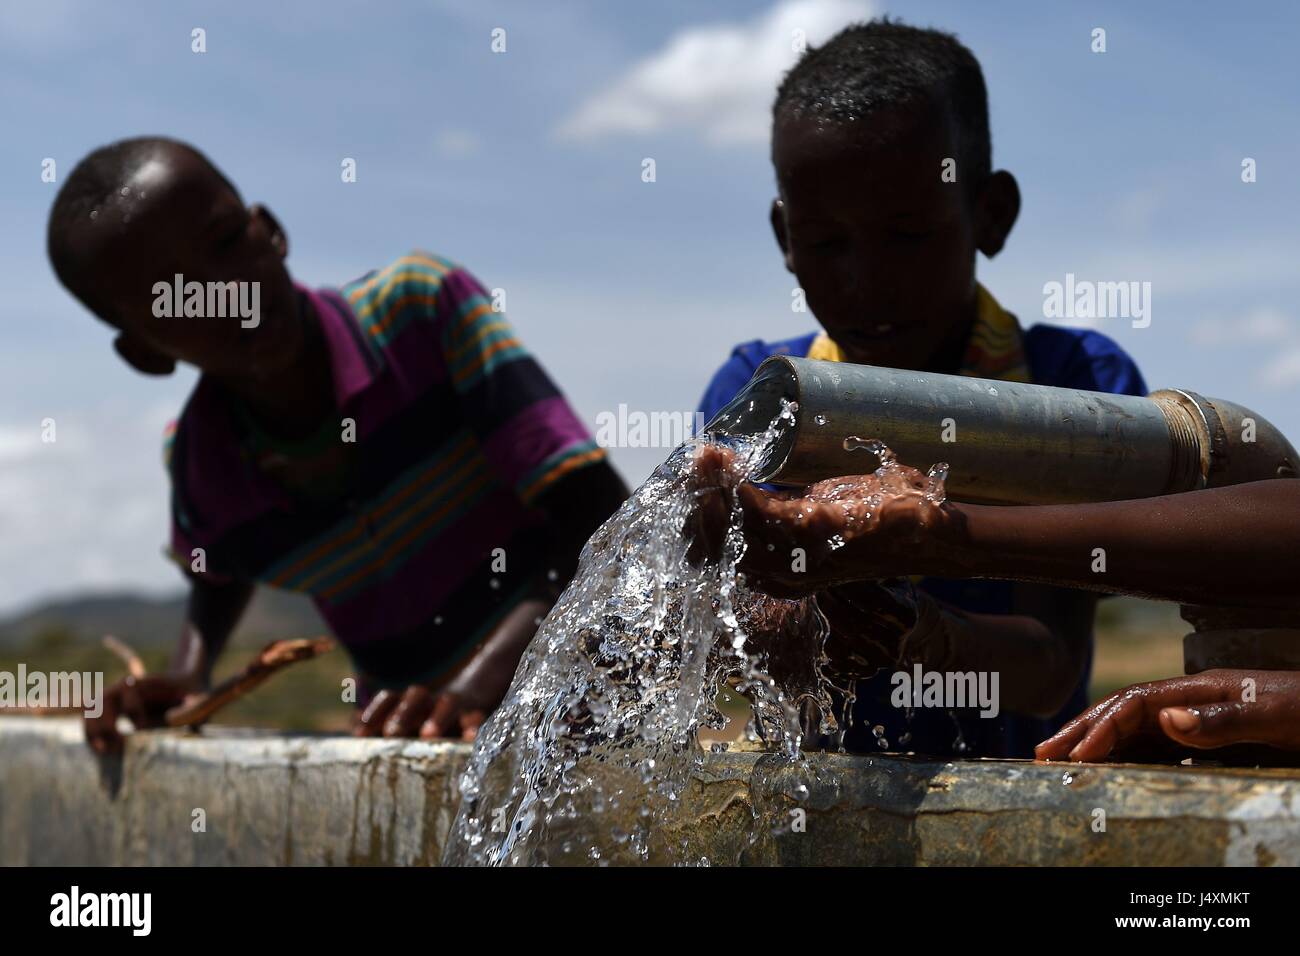 Kinder waschen mit Wasser aus einer Pipeline in das Dorf Afraaga, Somaliland, wo Charity CARE International einen Speichertank gebaut und installiert haben Rohrleitungen und Armaturen Dorfbewohner Zugang zu sauberem Wasser aus einem nahe gelegenen Bohrloch zu geben. Stockfoto